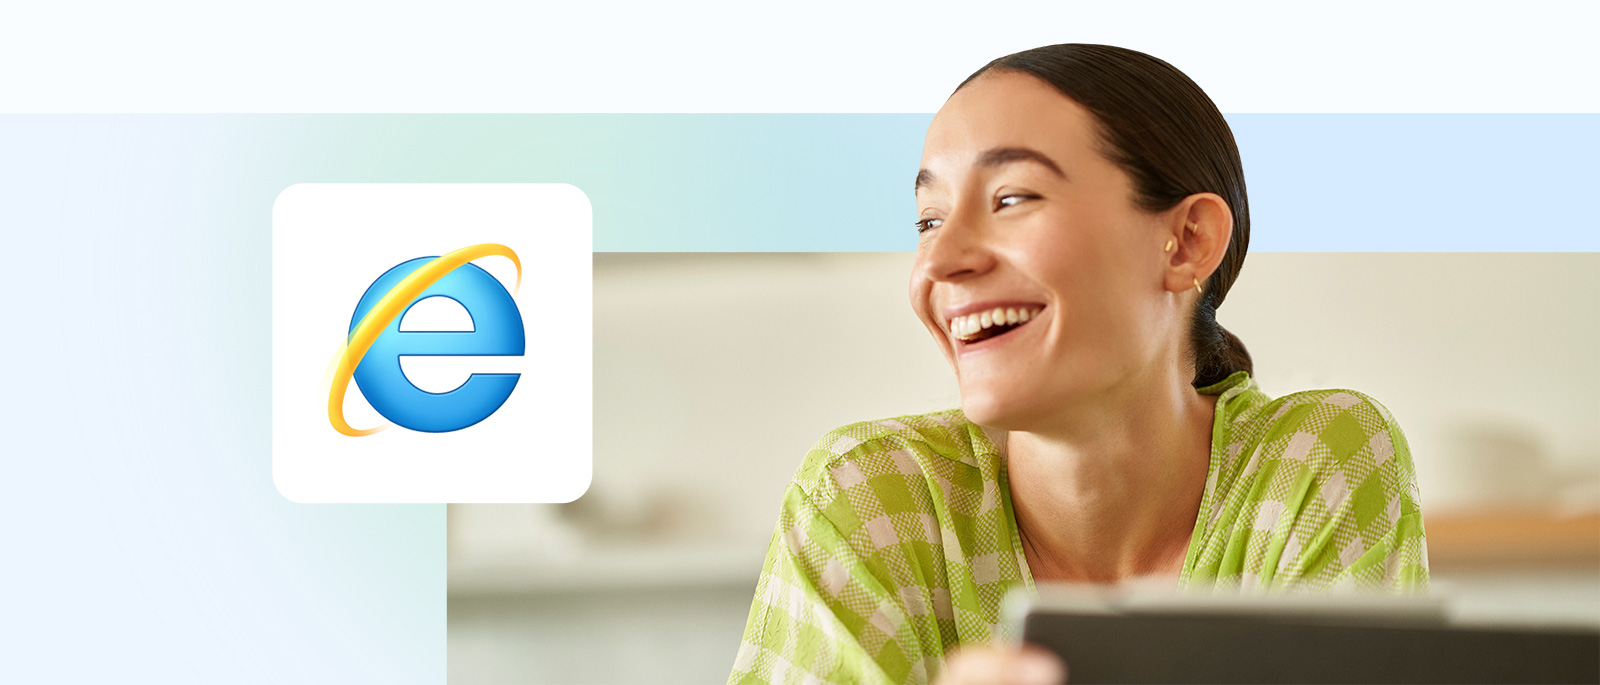 웃는 얼굴 그림이 붙어 있고 전경에 Internet Explorer 아이콘이 있는 노트북 앞에 앉아 있는 사람.